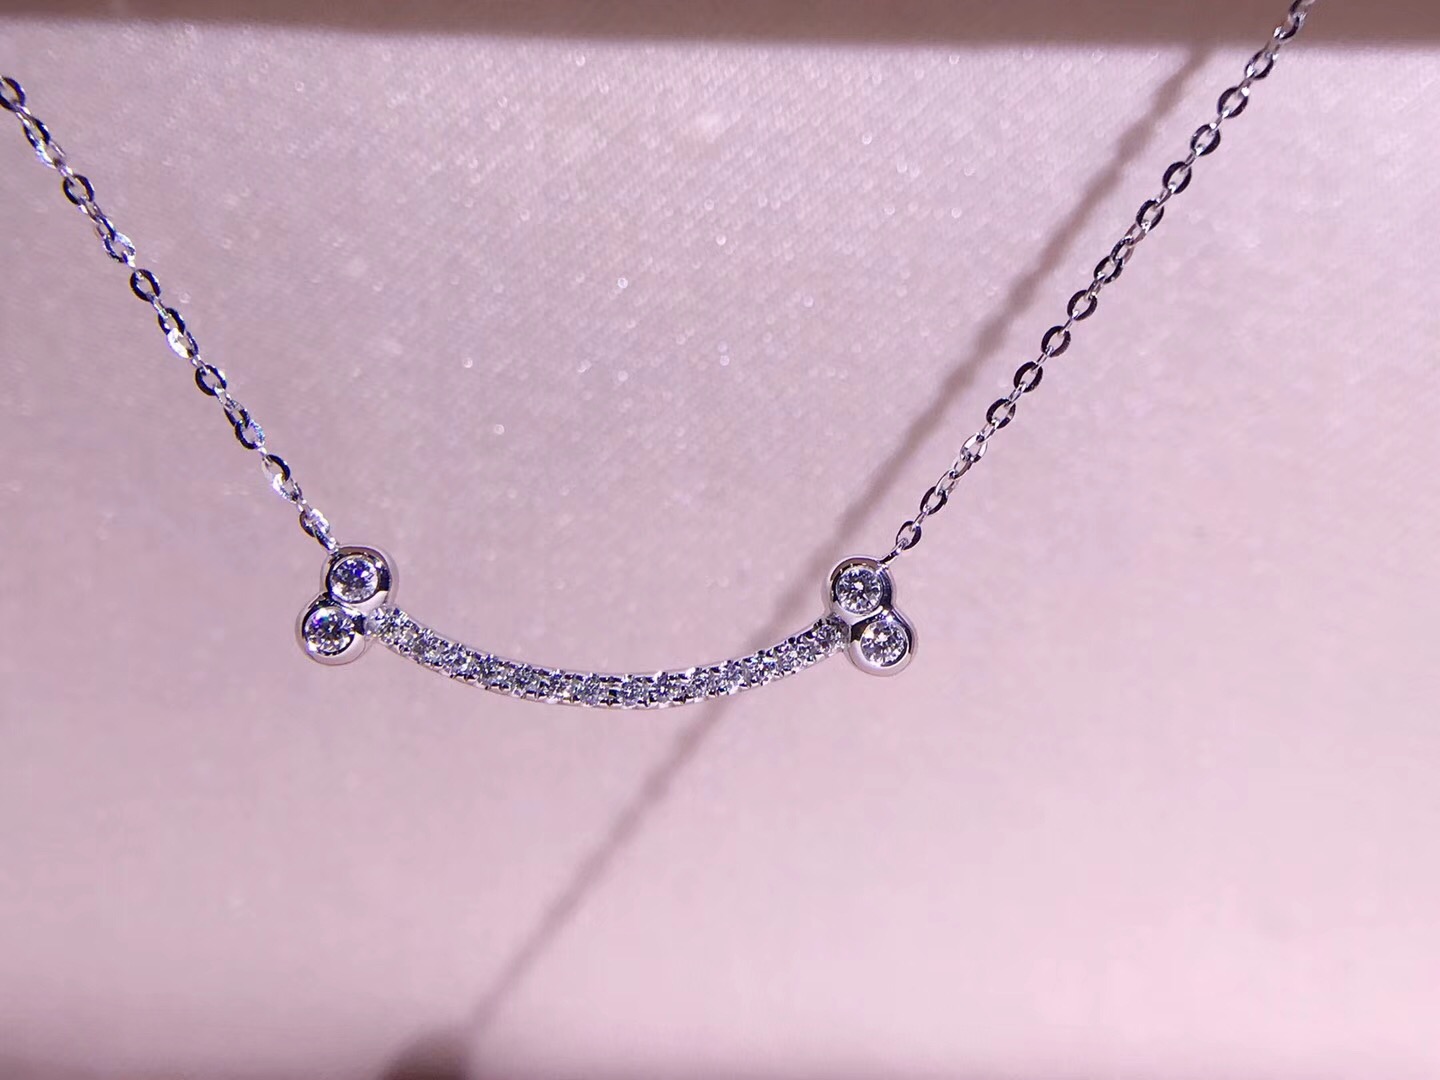 N00657 Smile Diamond Necklace in 18k White Gold/18k Gold